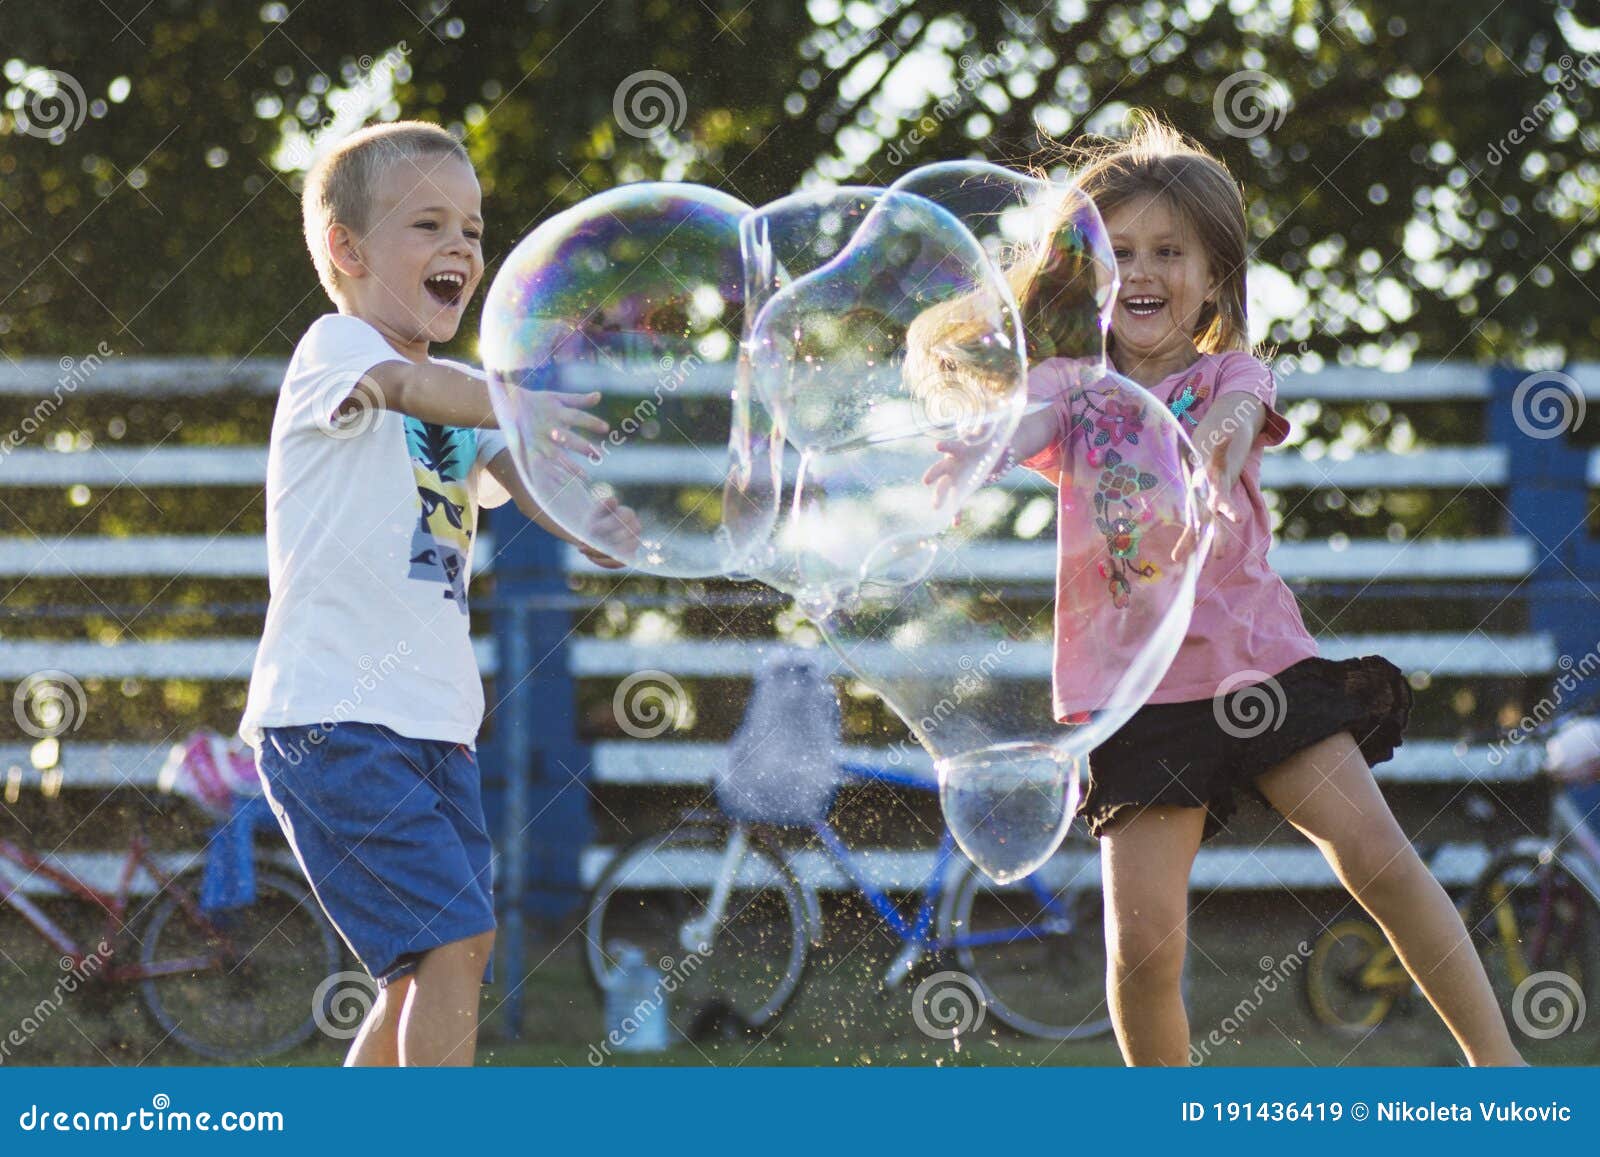 Niños jugando pompas de jabón al aire libre